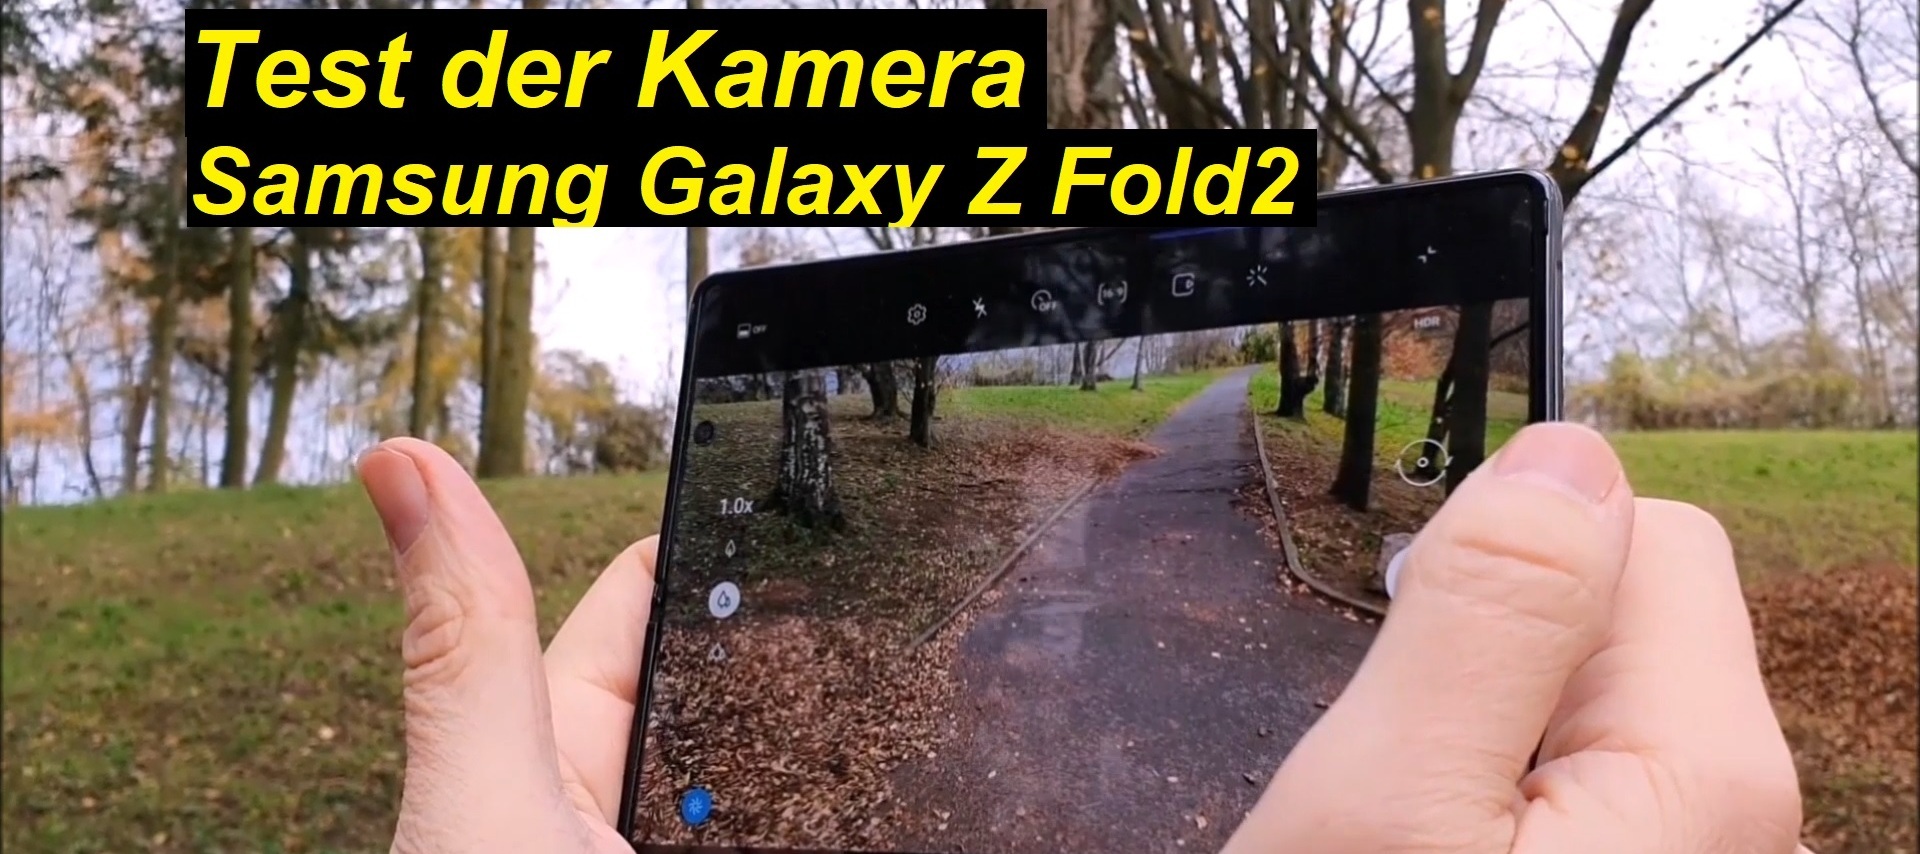 Test der Kamera vom Samsung Galaxy Z Fold2